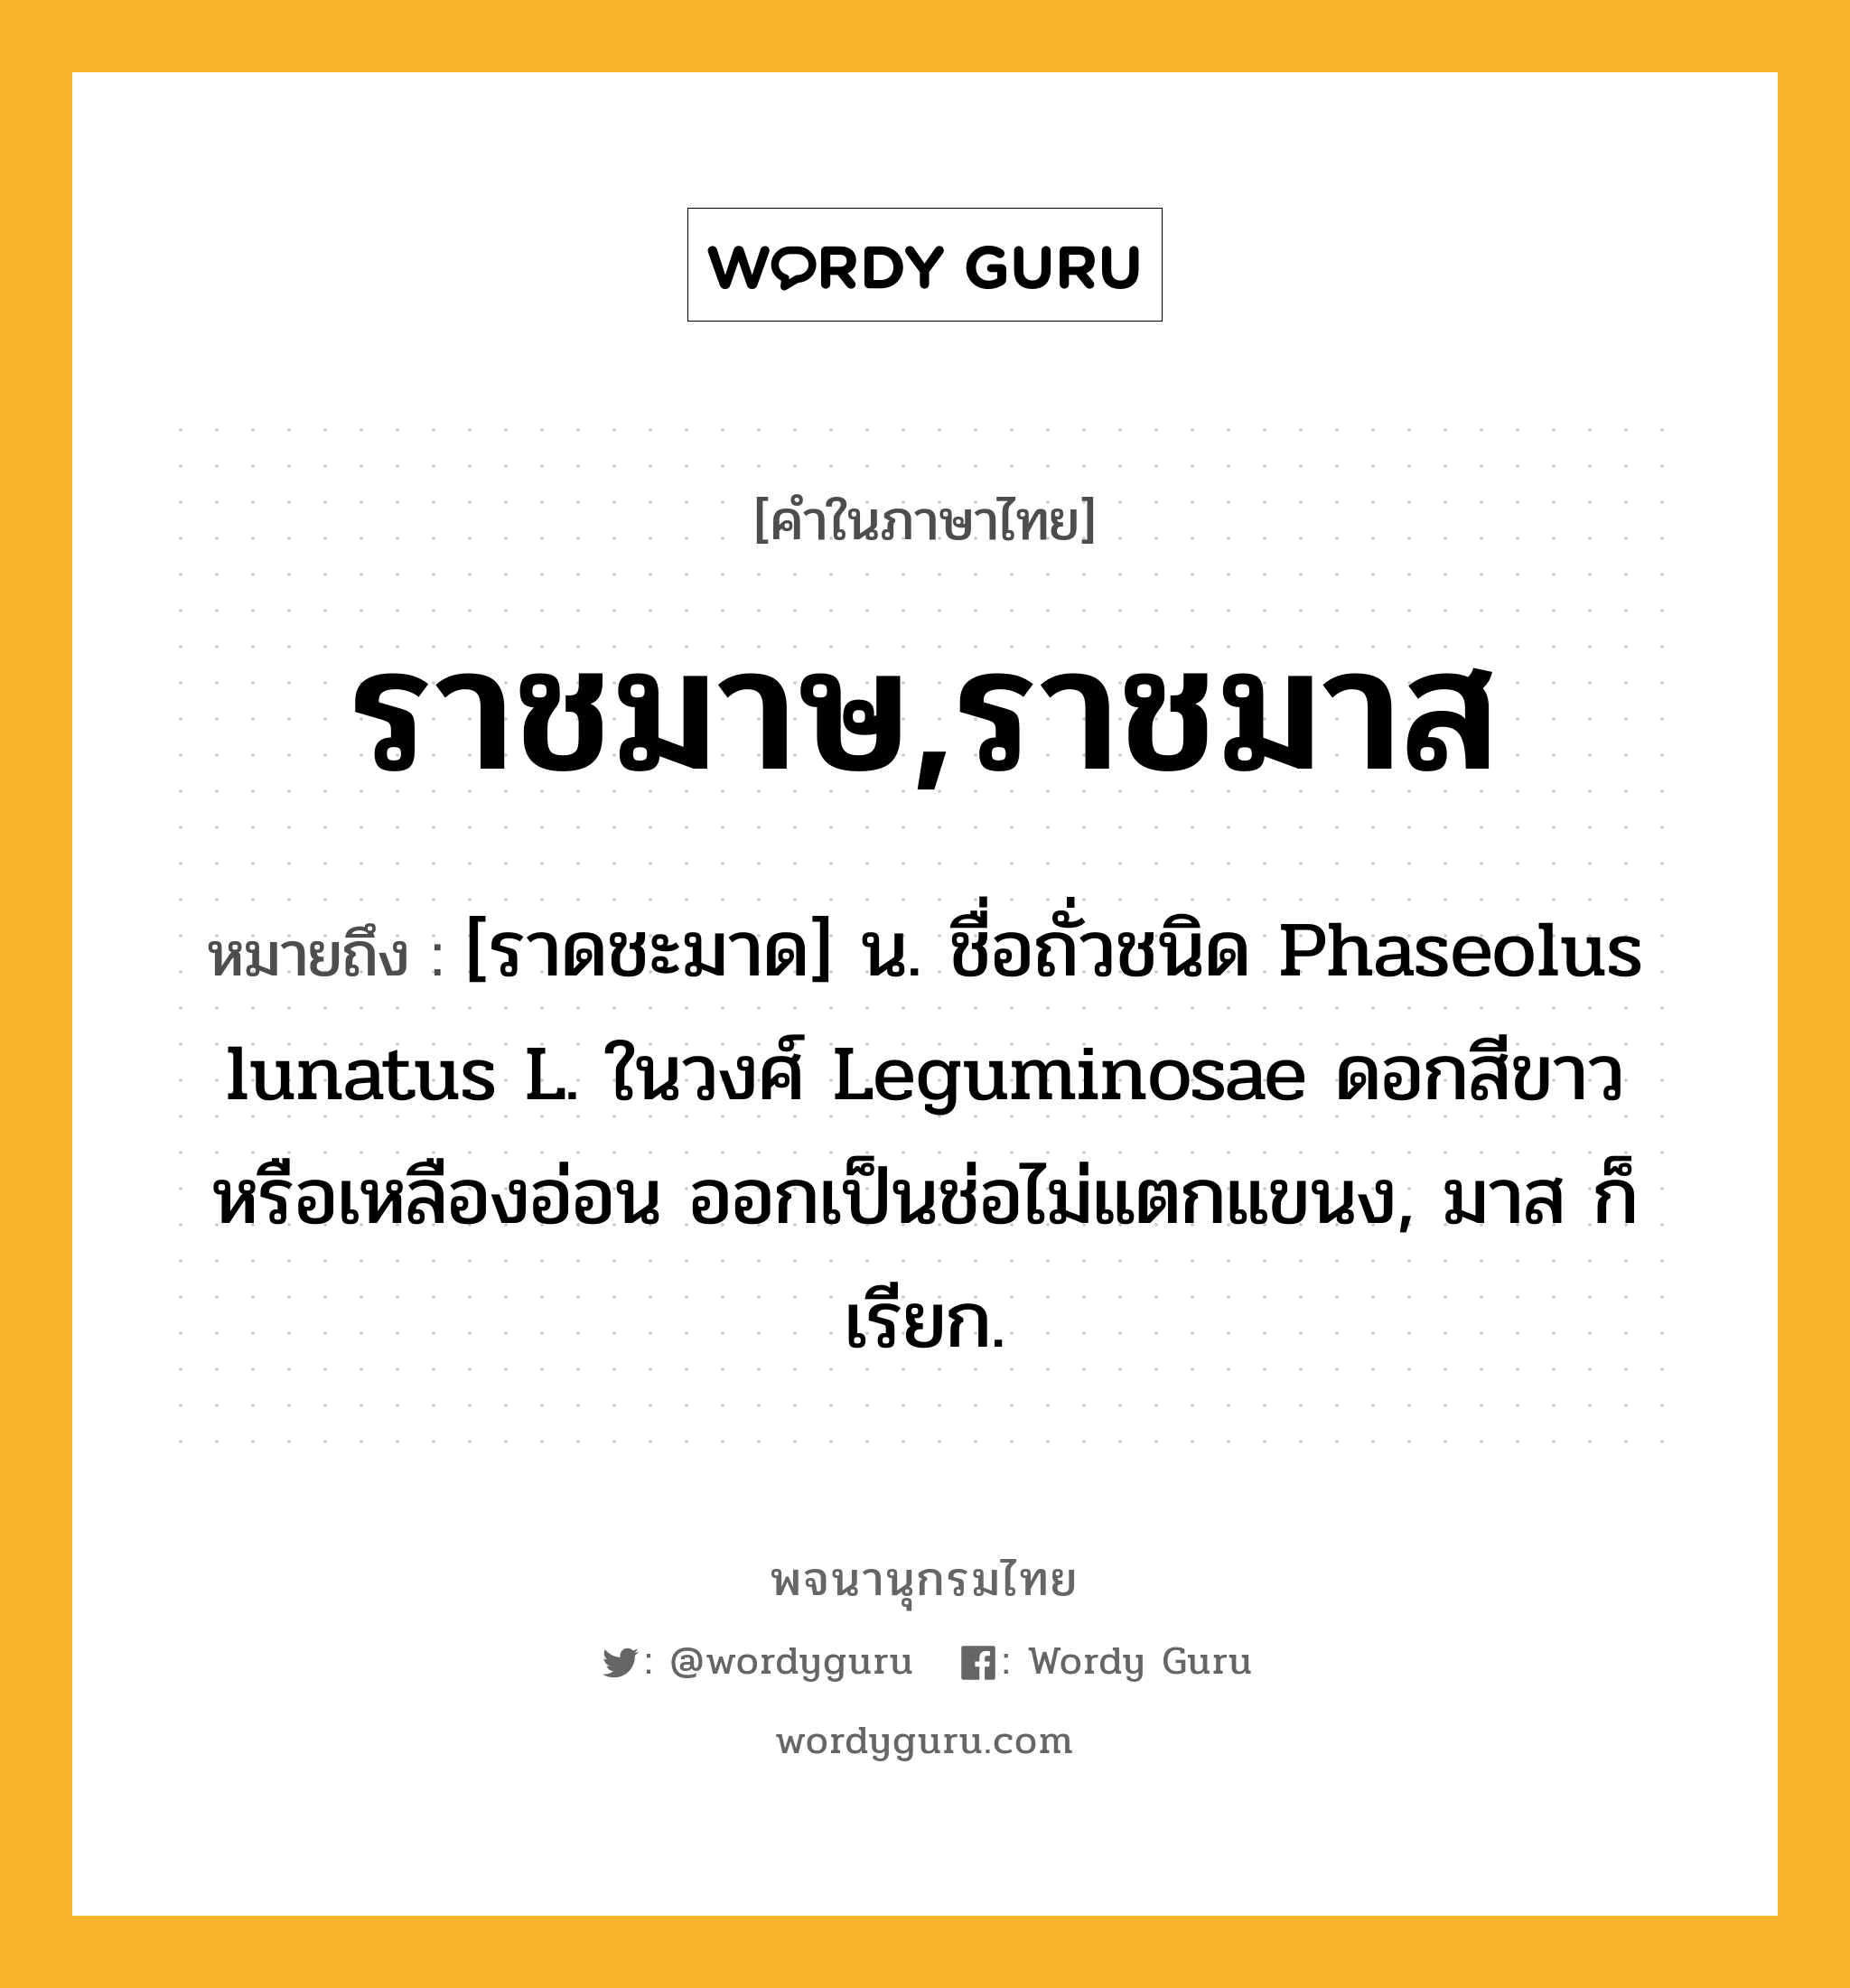 ราชมาษ,ราชมาส หมายถึงอะไร?, คำในภาษาไทย ราชมาษ,ราชมาส หมายถึง [ราดชะมาด] น. ชื่อถั่วชนิด Phaseolus lunatus L. ในวงศ์ Leguminosae ดอกสีขาวหรือเหลืองอ่อน ออกเป็นช่อไม่แตกแขนง, มาส ก็เรียก.